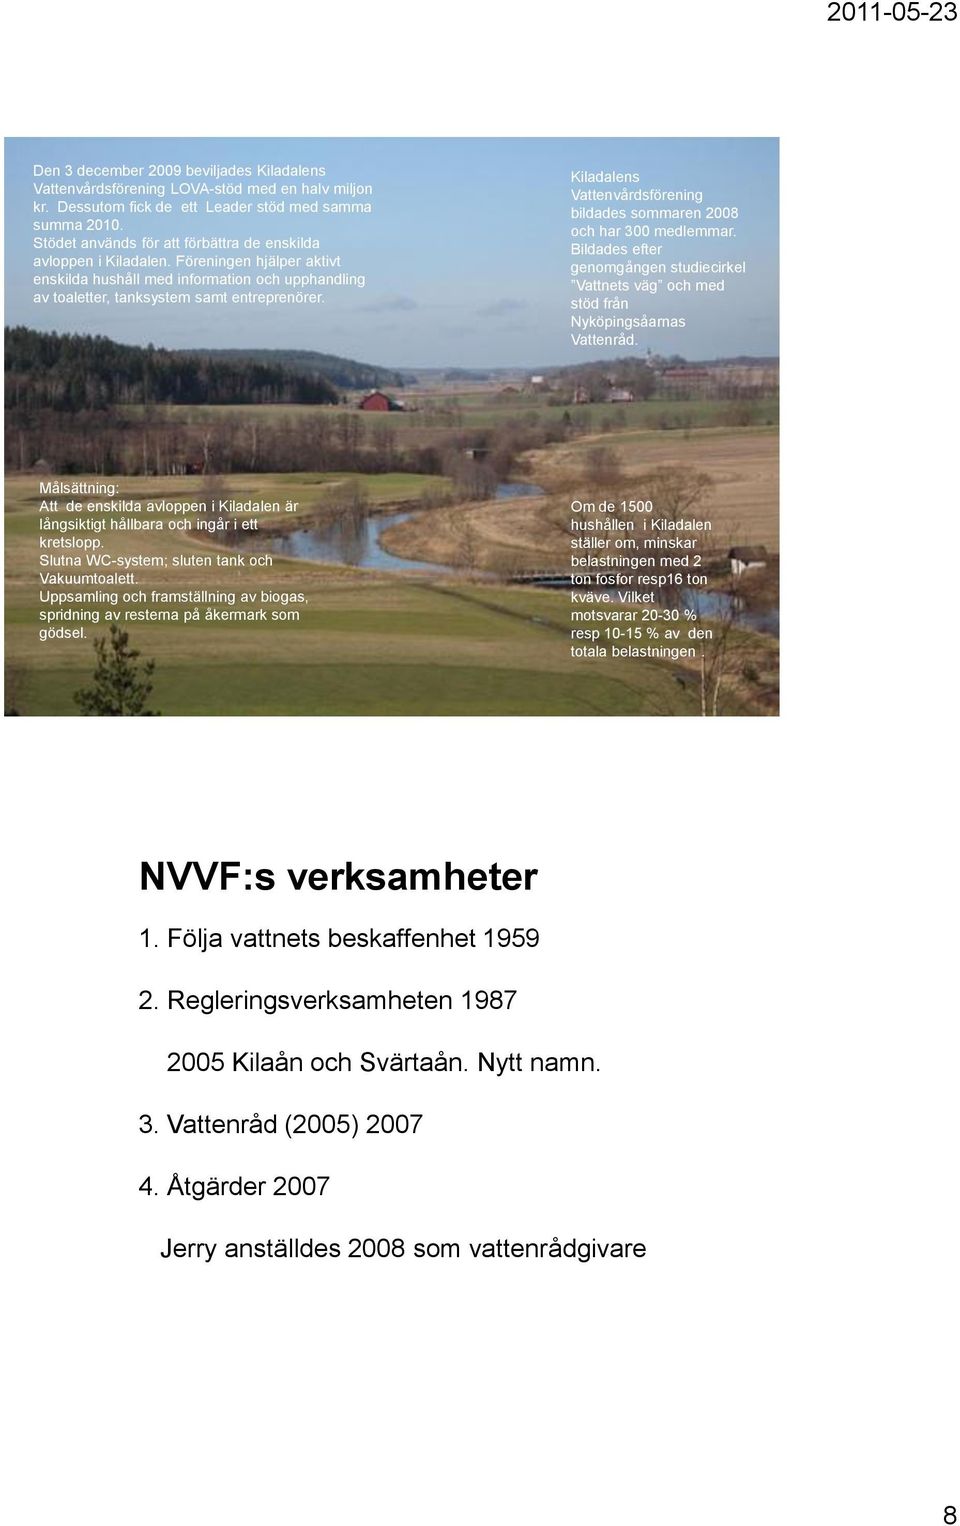 Kiladalens Vattenvårdsförening bildades sommaren 28 och har 3 medlemmar. Bildades efter genomgången studiecirkel Vattnets väg och med stöd från Nyköpingsåarnas Vattenråd.